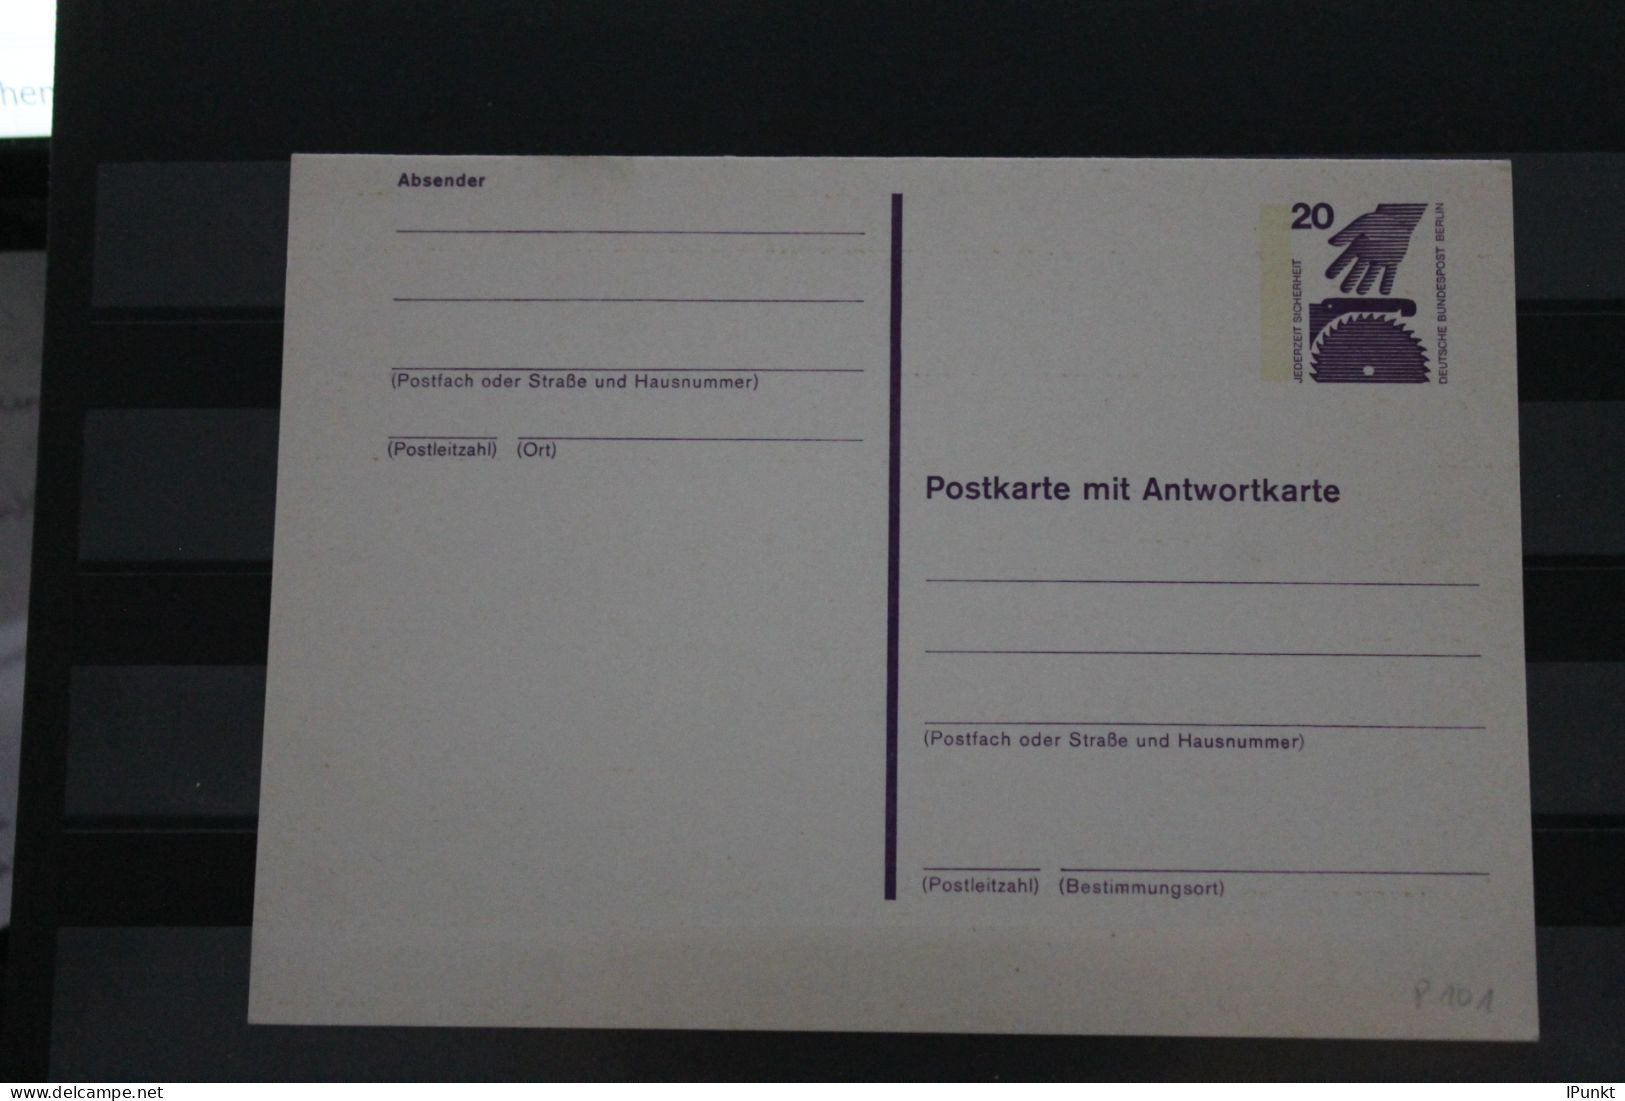 Berlin 1975; Ganzsache Unfallverhütung Postkarte Mit Antwortkarte  P 101; Ungebraucht - Cartes Postales - Neuves